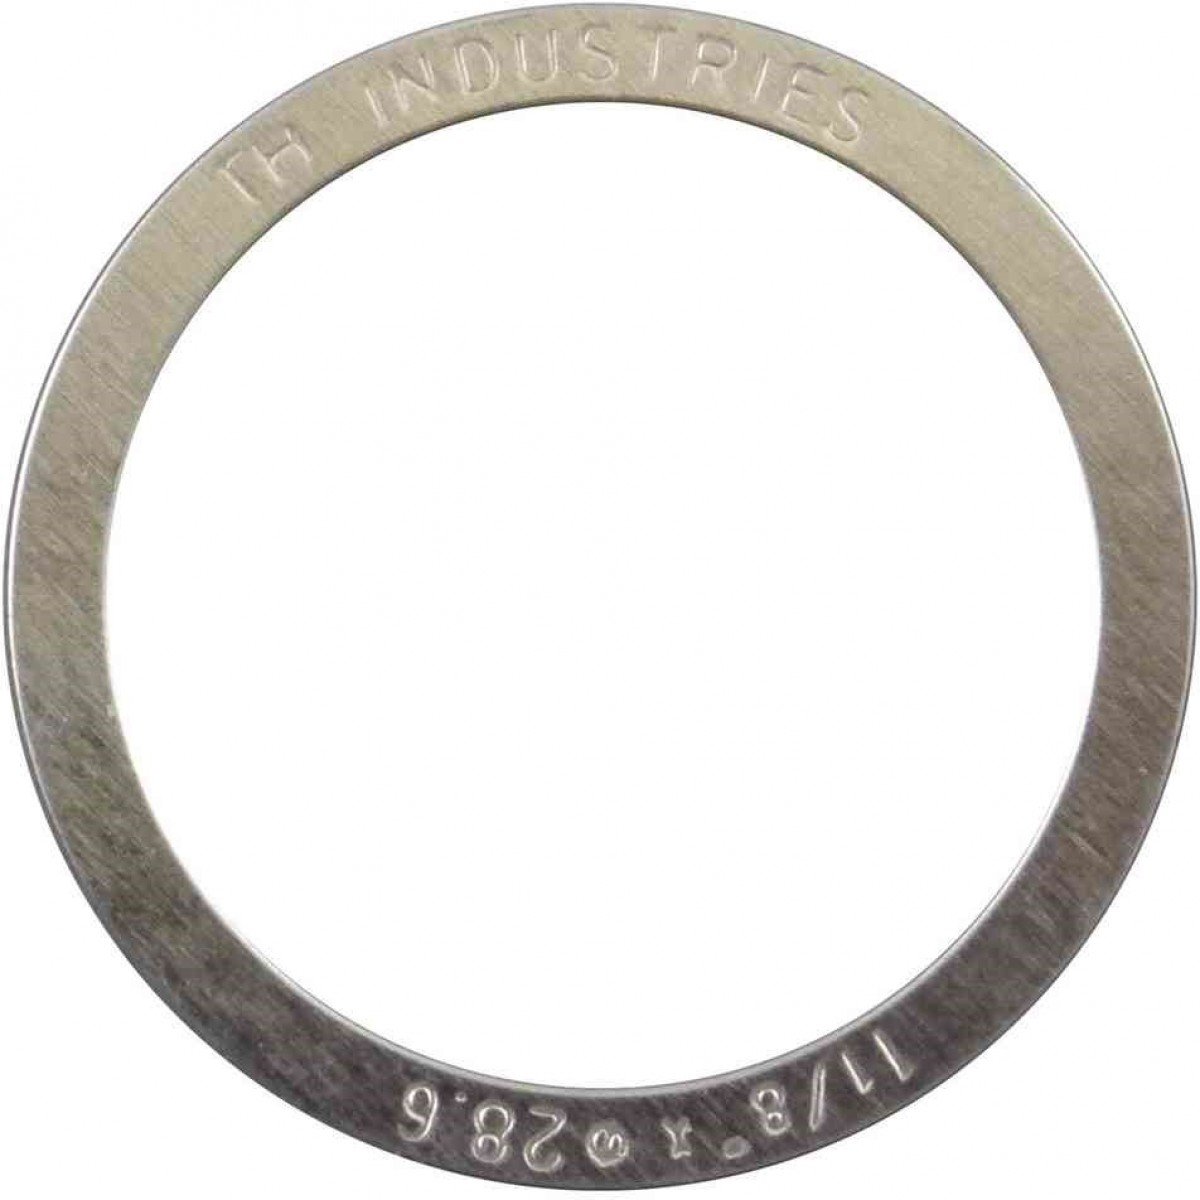 Микро-кольцо прокладочное Elvedes, для рулевой колонки 1-1/8, 0.25 мм, комплект 10 штук, 2017144-10 велосипедный подшипник рулевой колонки elvedes mr043 872e rs acb 1 5 ø30 15хø41 5х6 5 ø36хø36 2017136